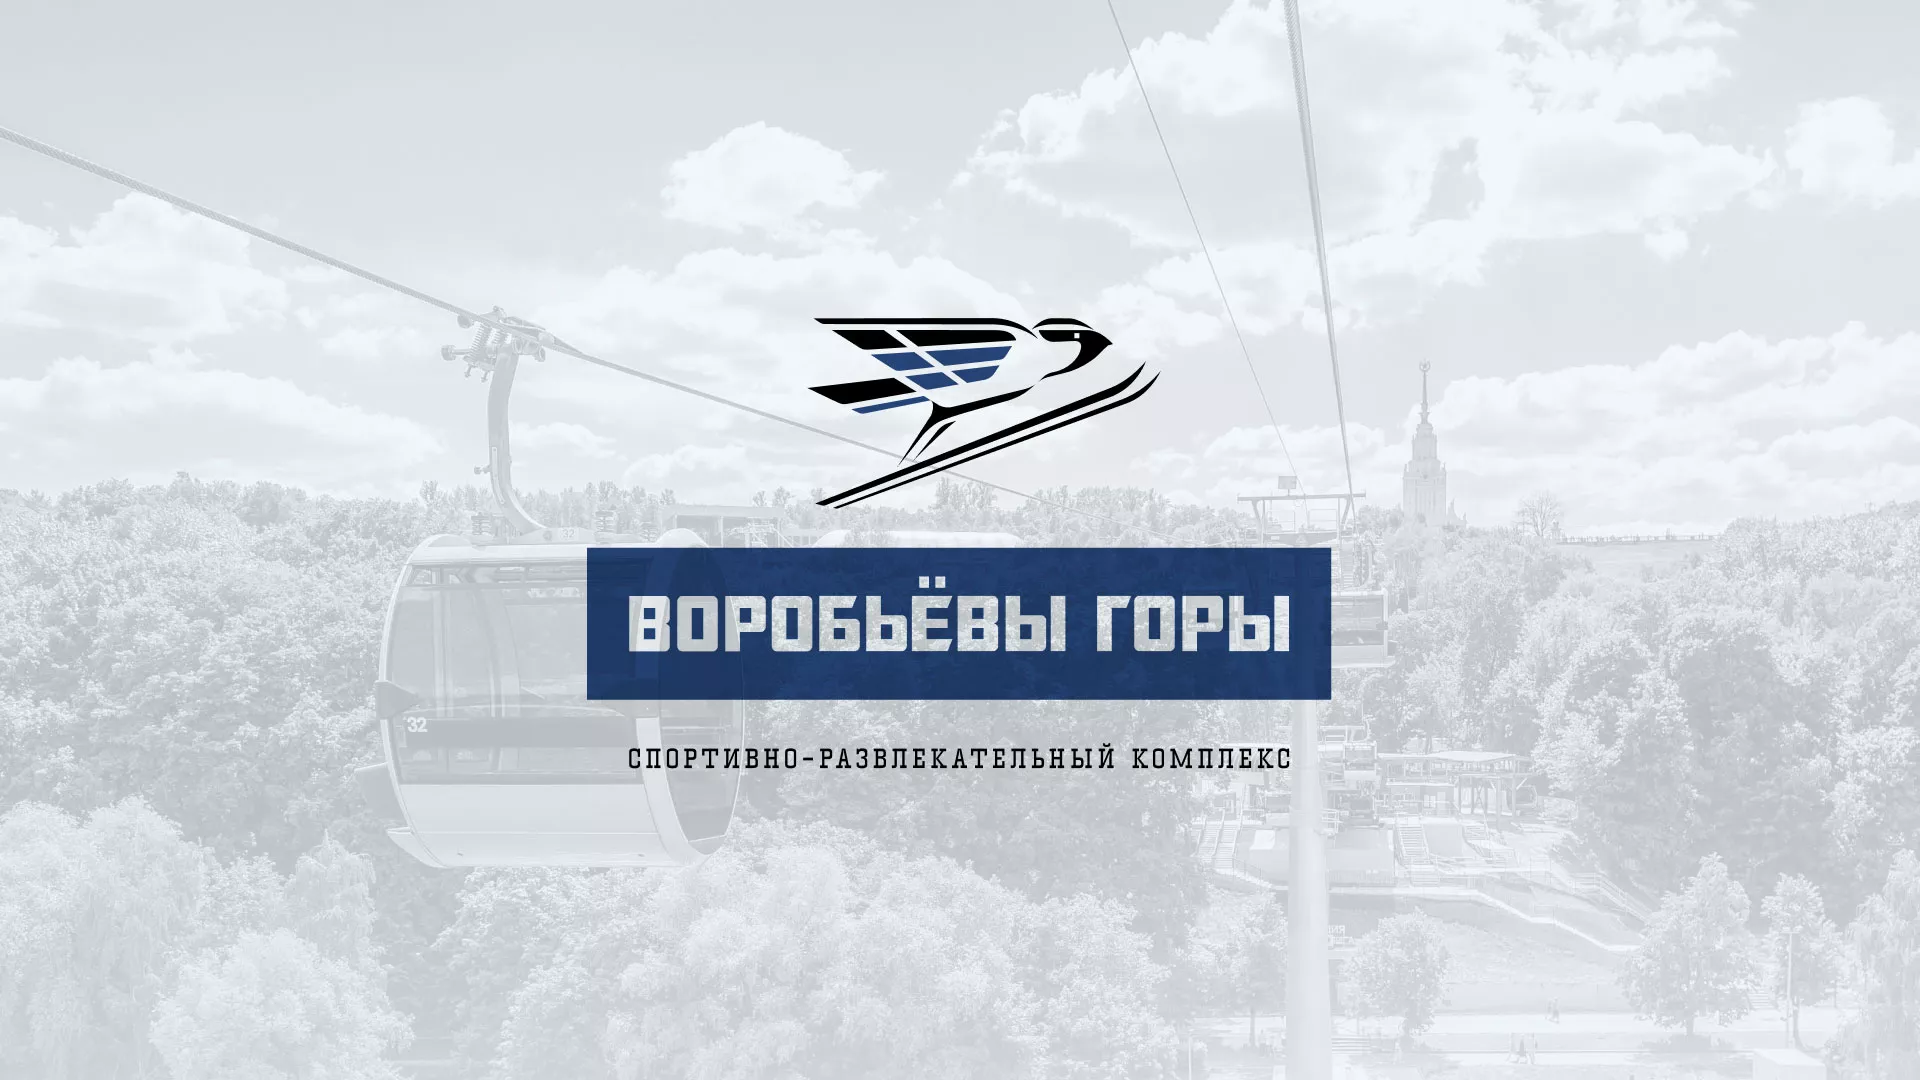 Разработка сайта в Красновишерске для спортивно-развлекательного комплекса «Воробьёвы горы»